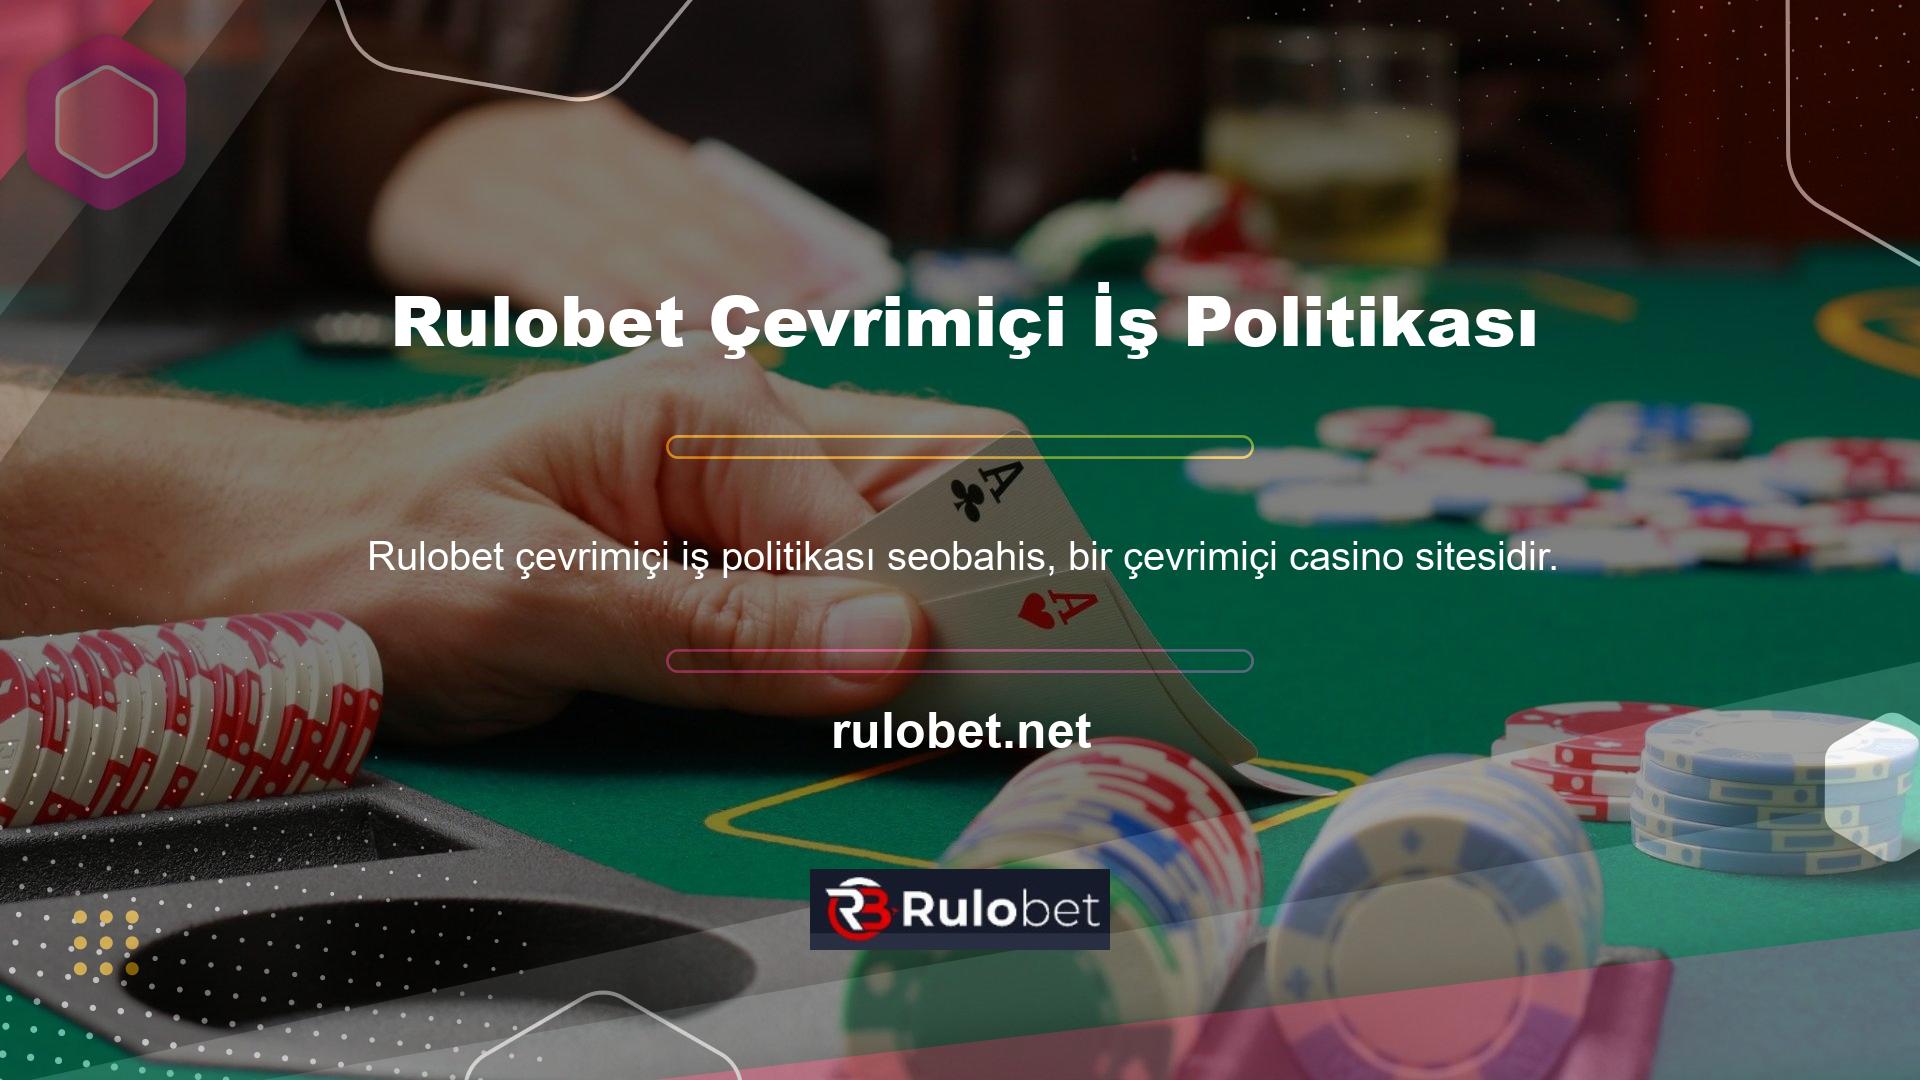 Rulobet çevrimiçi iş kurallarına uygun olarak çevrimiçi casino hizmetlerinin sağlanması konusunda anlaşmaya varıldı